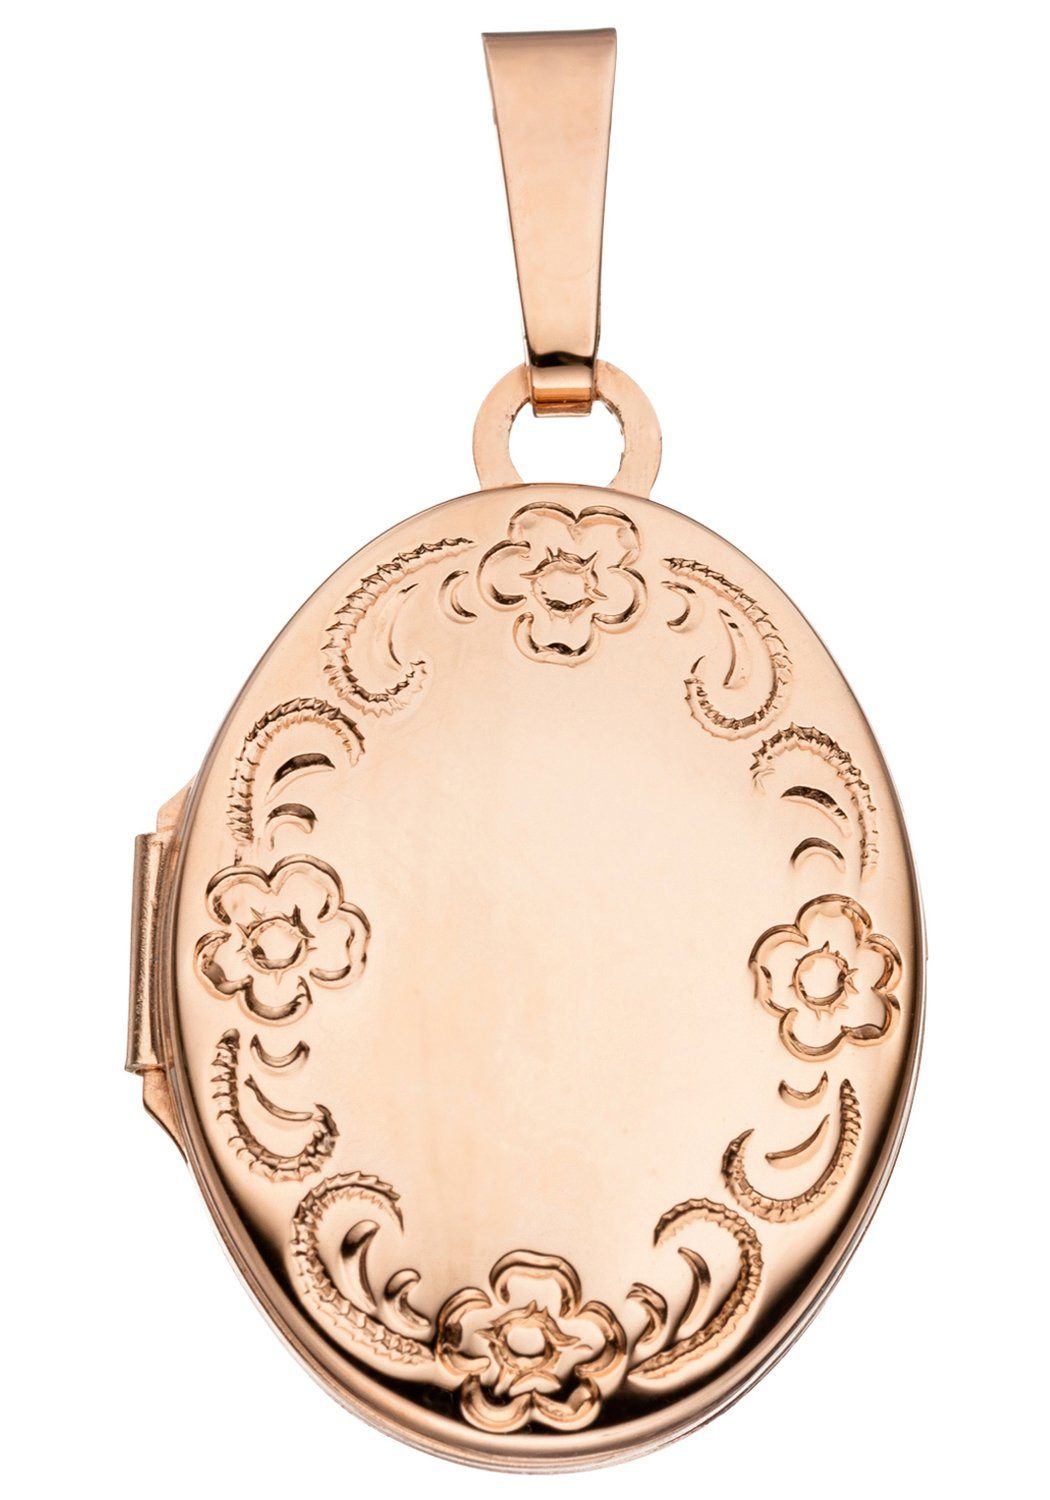 Medallionanhänger Anhänger JOBO Medaillon 925 vergoldet Silber roségold oval,